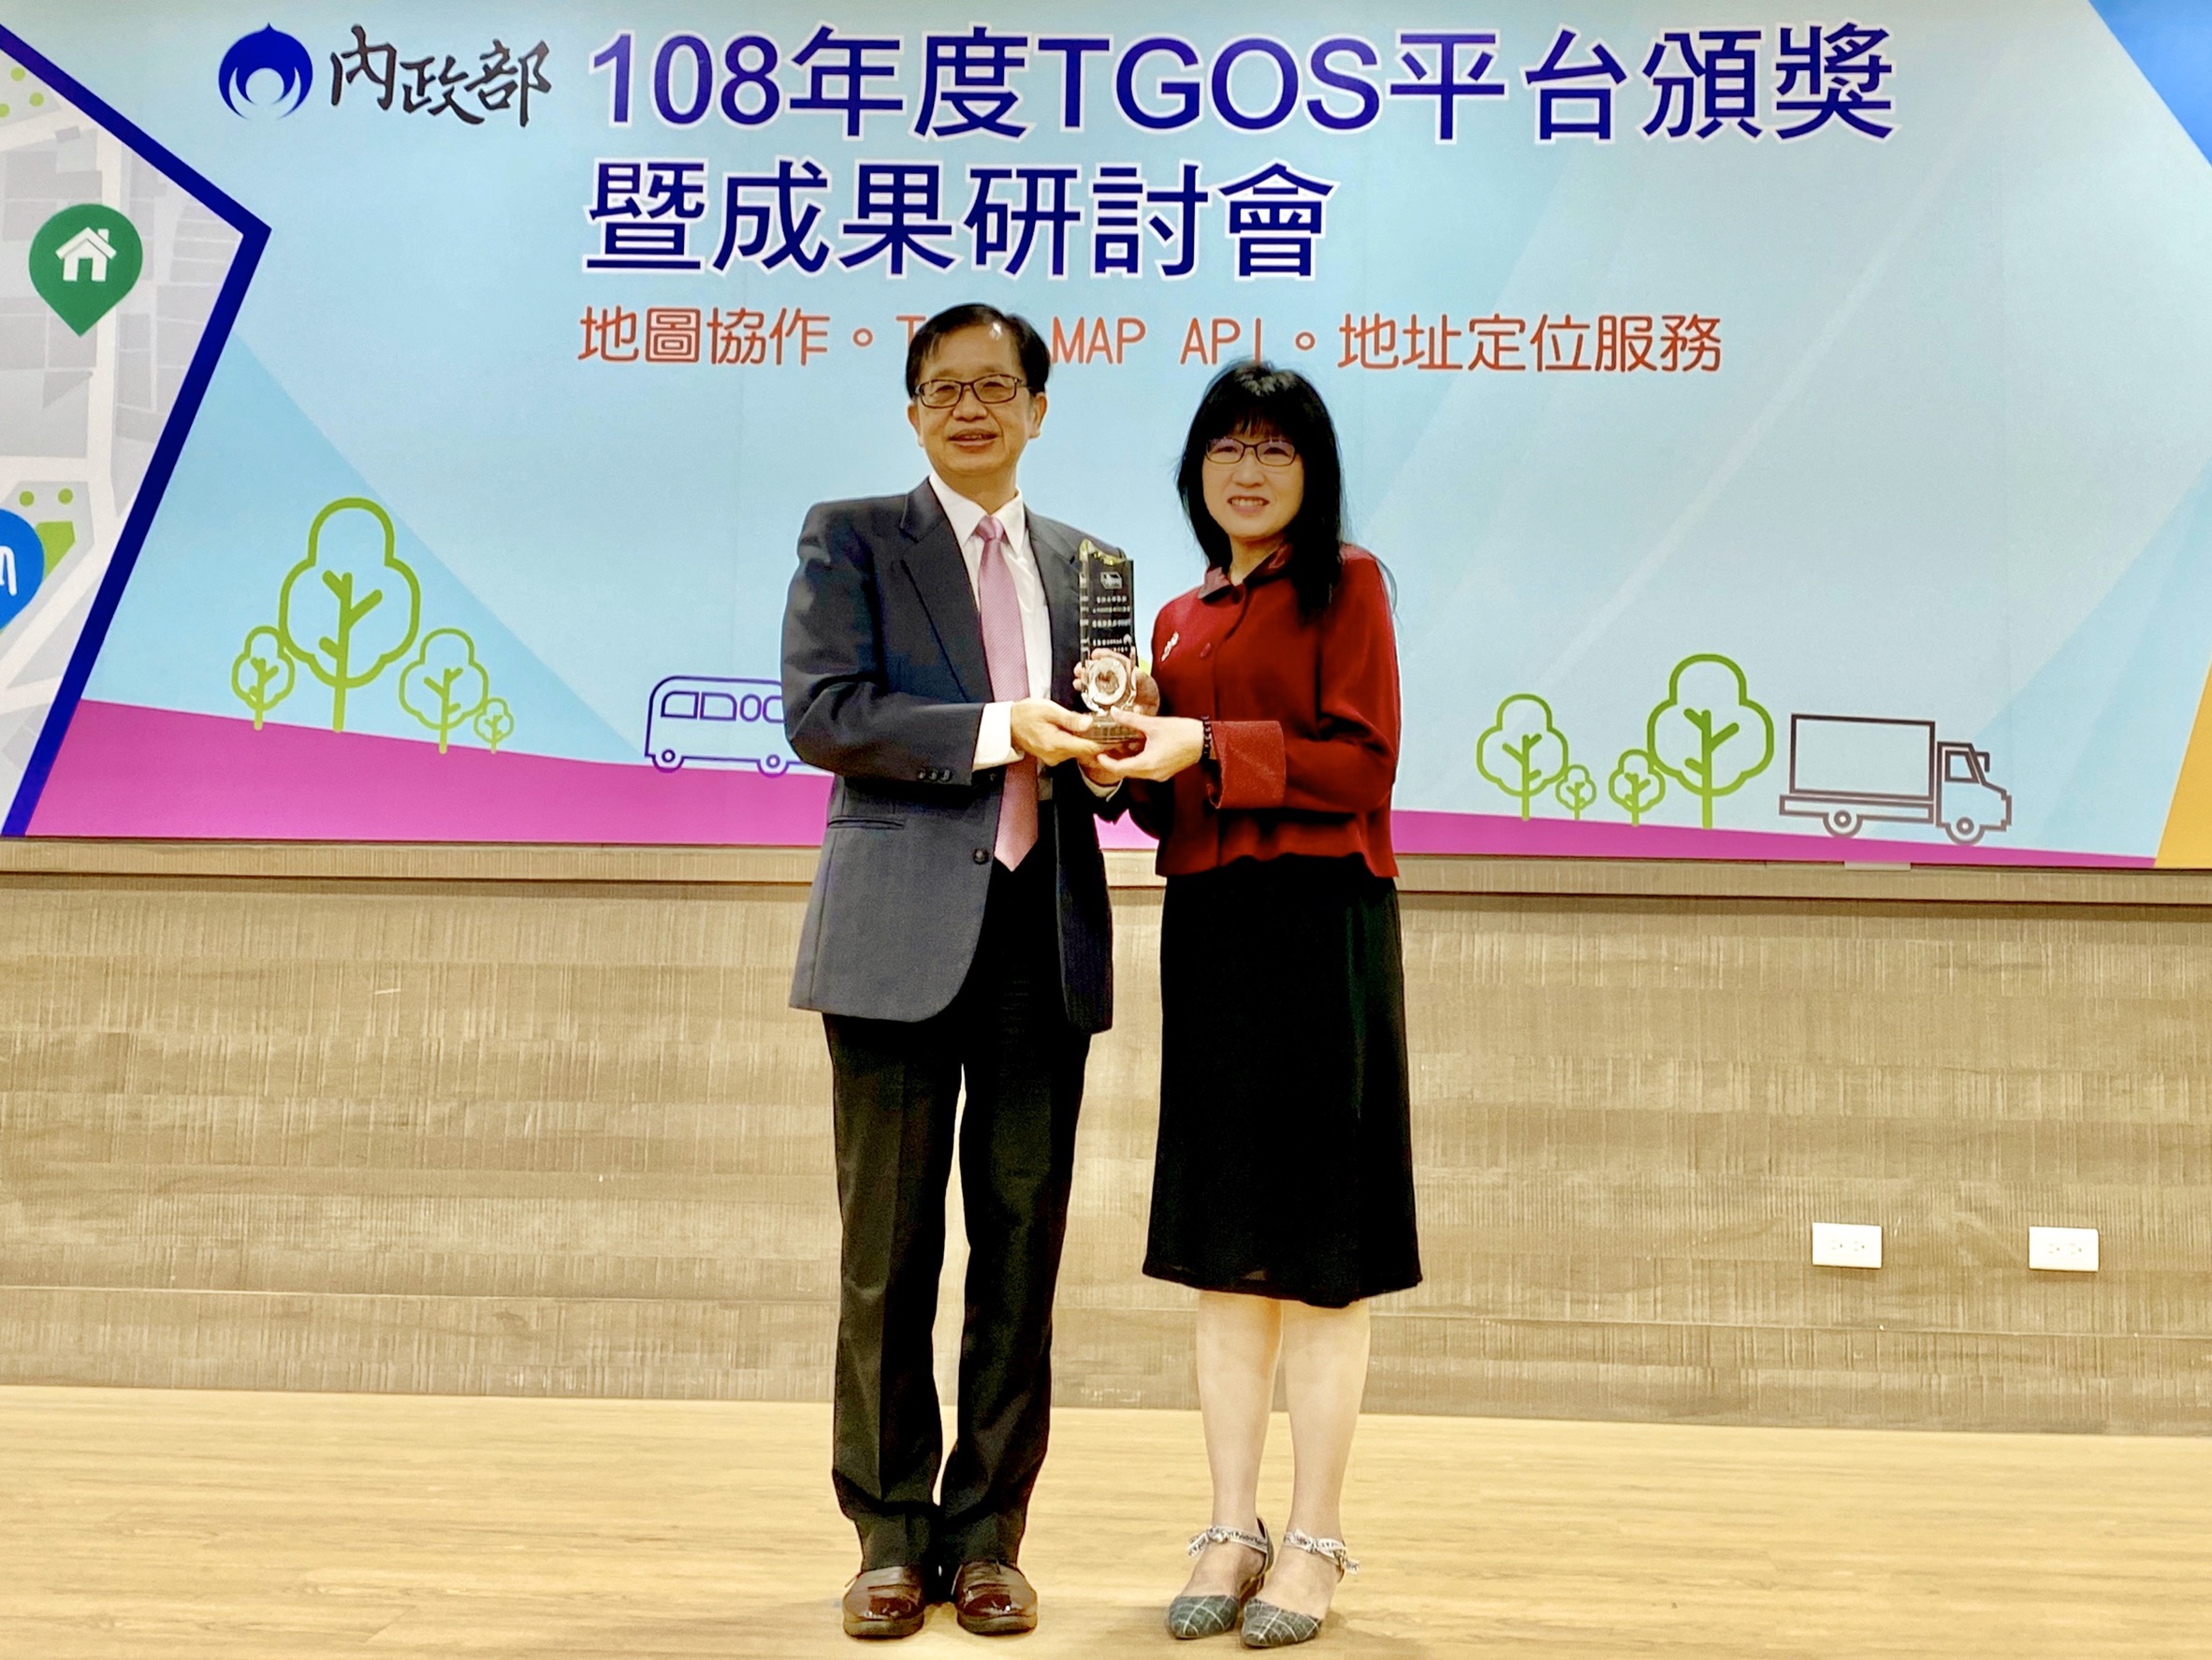 1081120-地理資訊平台-獲TGOS流通服務獎_圖示